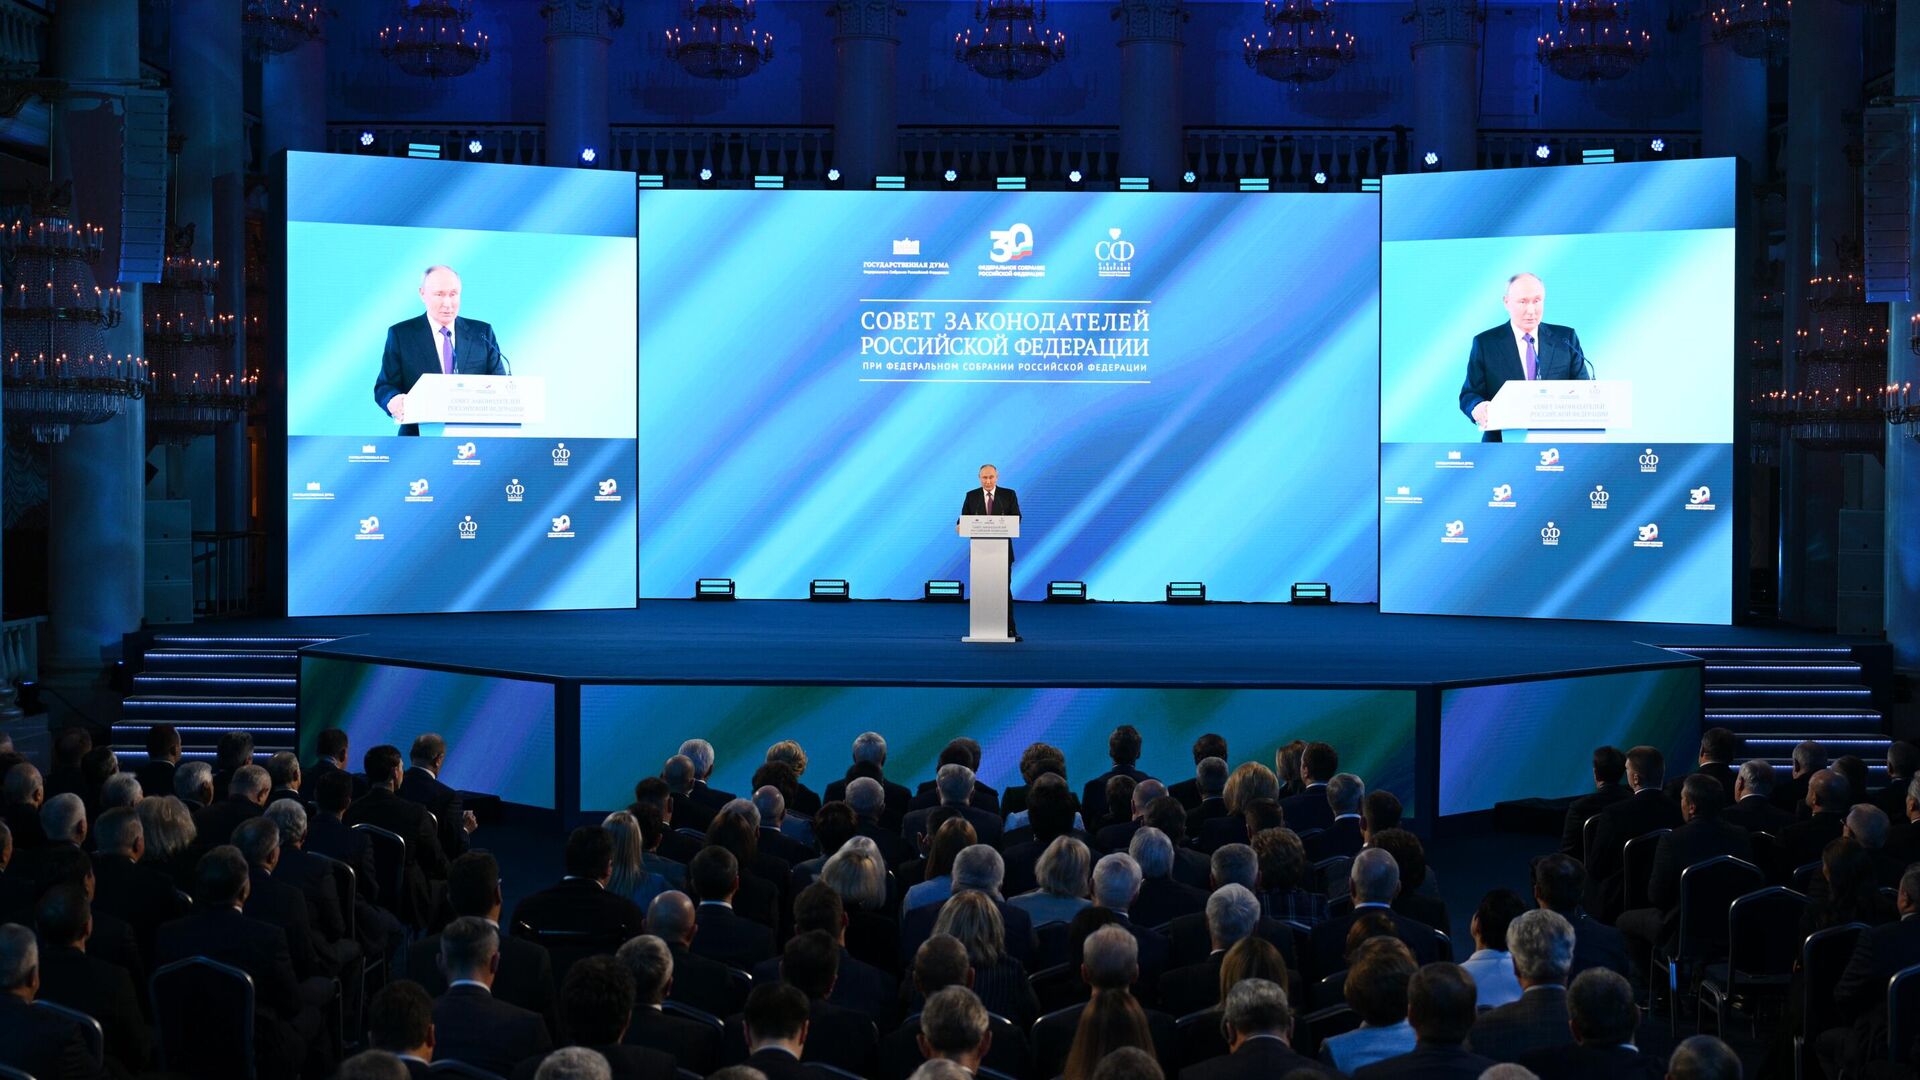 Президент РФ Владимир Путин выступает на заседании Совета законодателей РФ, посвящённом 30-летию Федерального Собрания РФ1